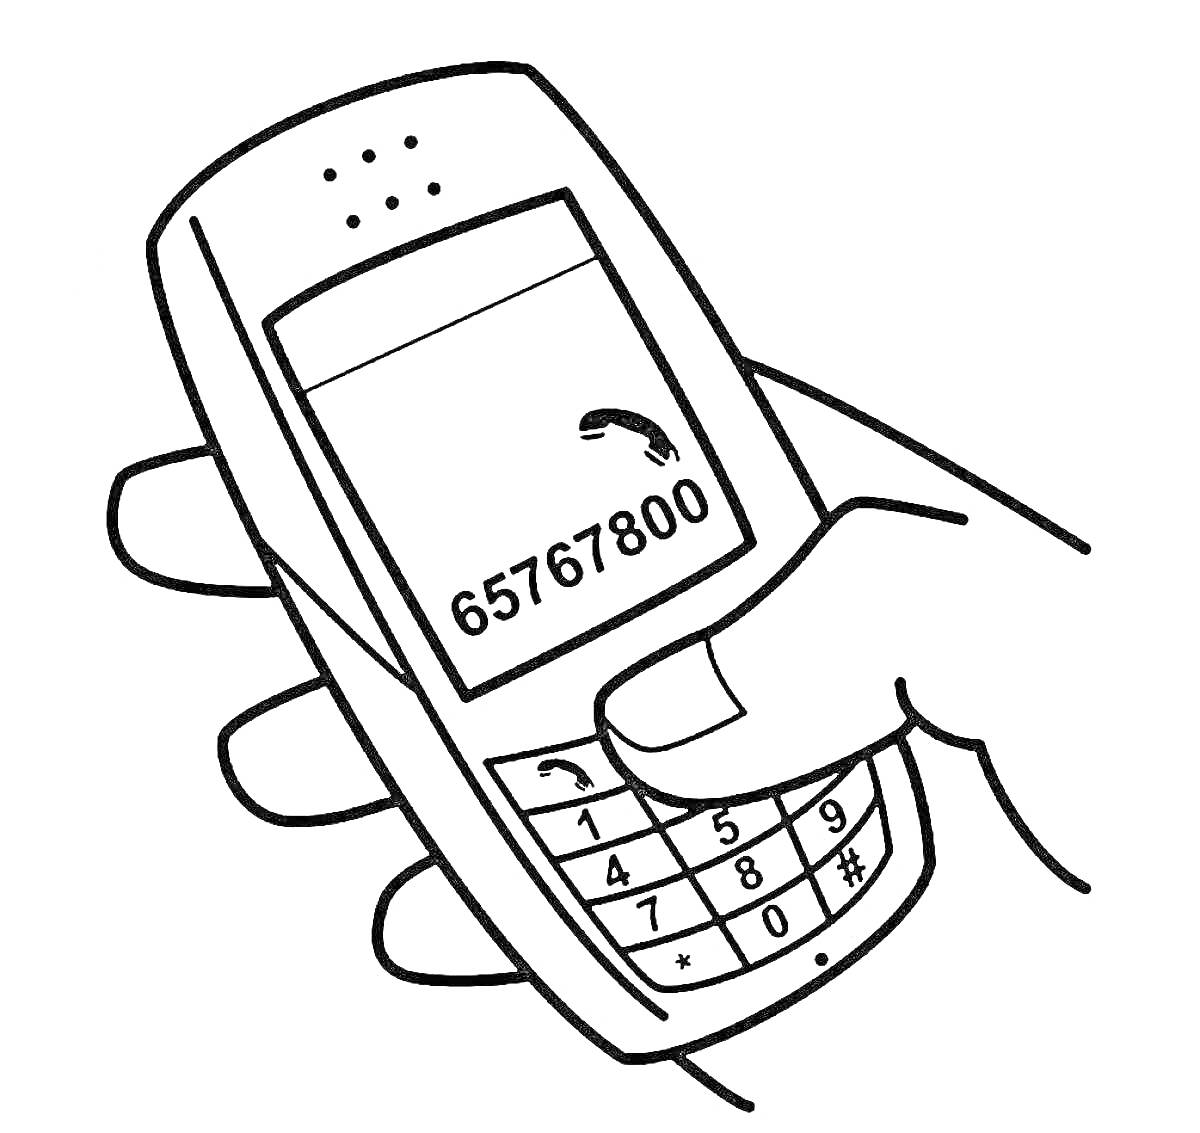 Раскраска Телефон в руке с цифрами и изображением трубки